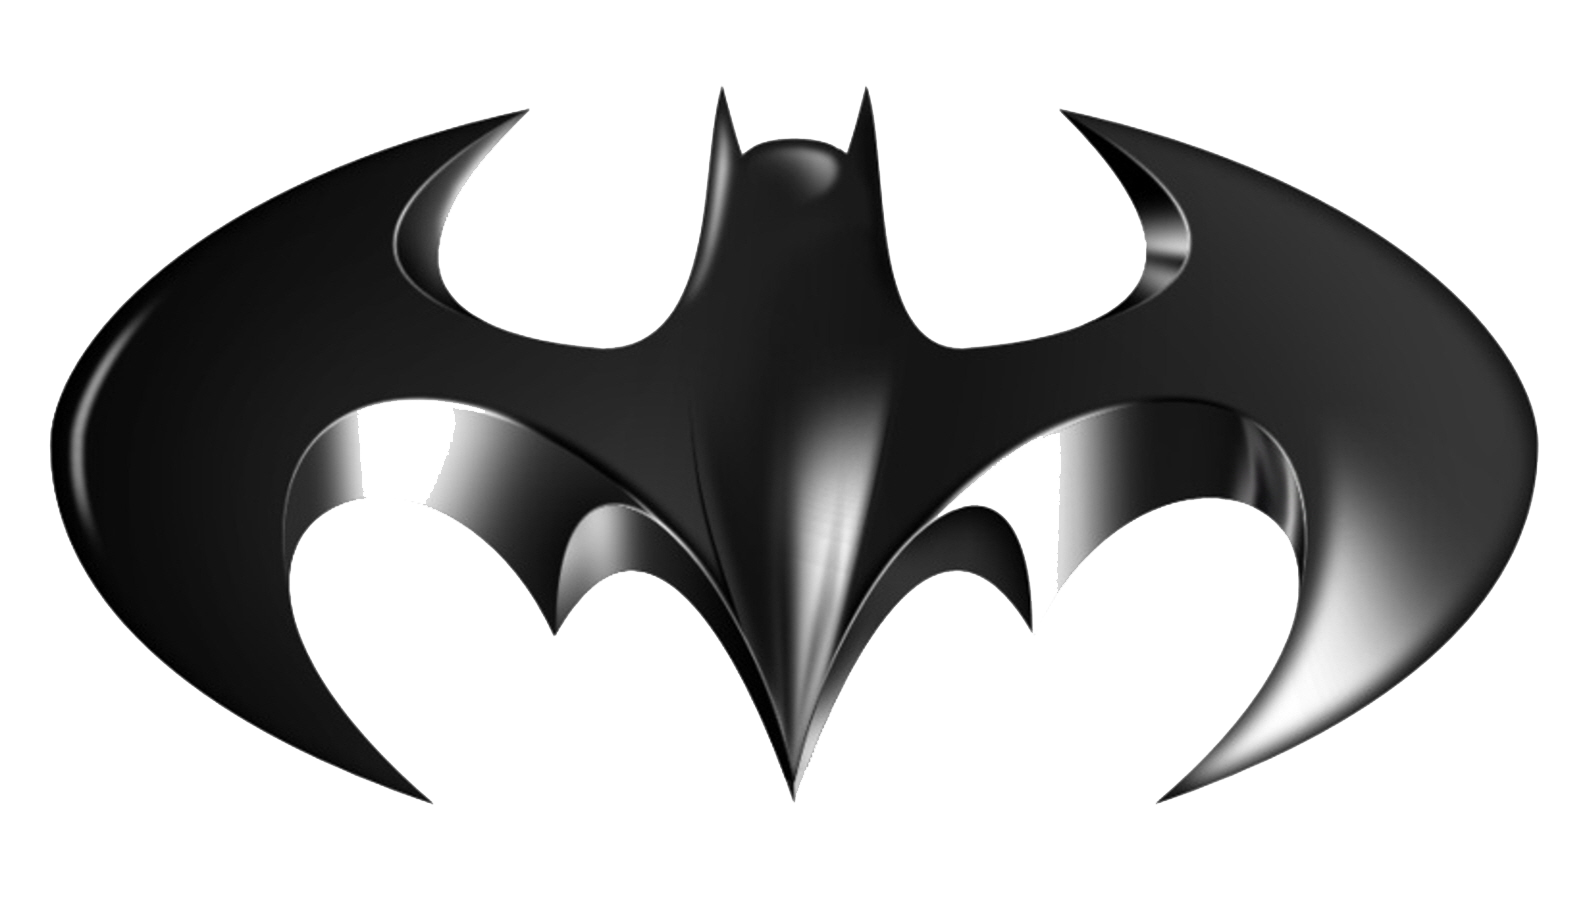 Batman Arkham Origins PNG Cli